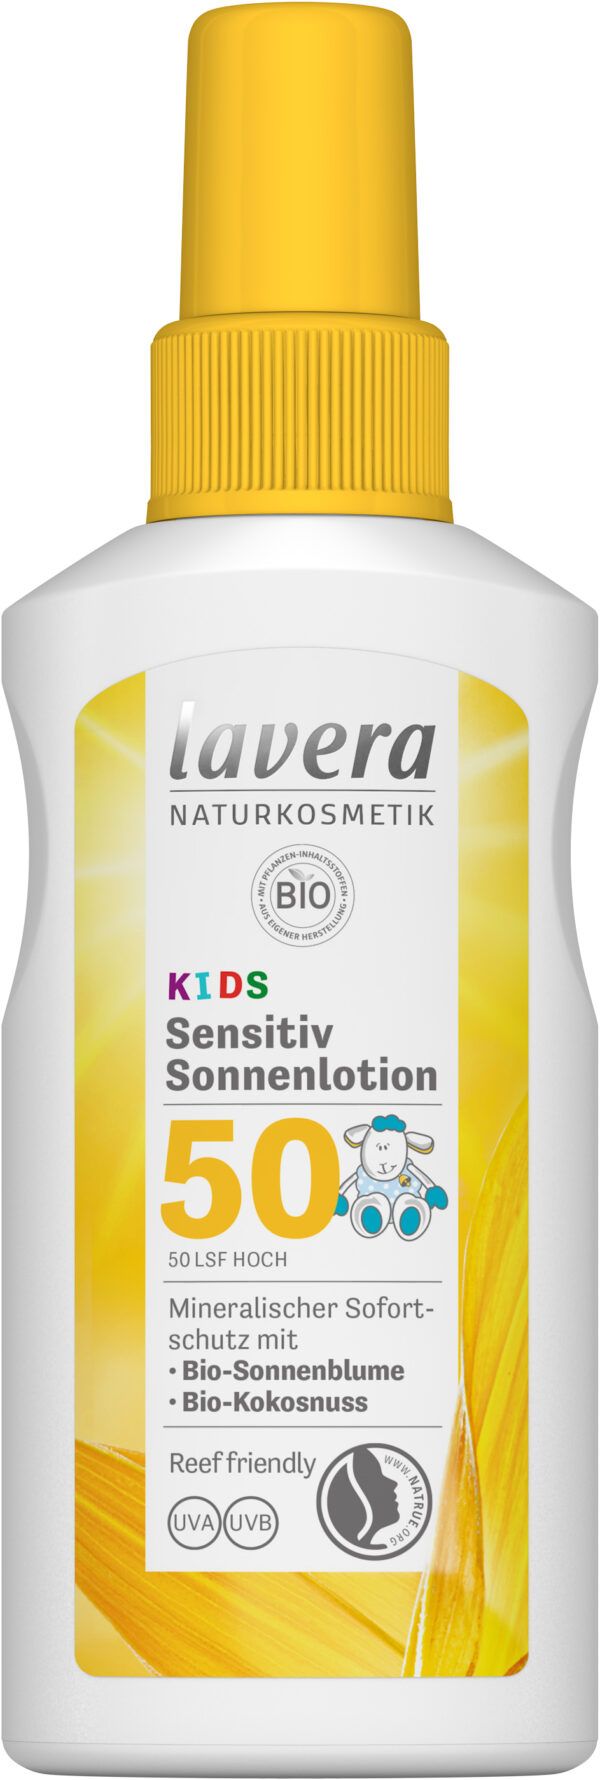 lavera Sensitiv Sonnenlotion KIDS LSF 50 4 x 100ml